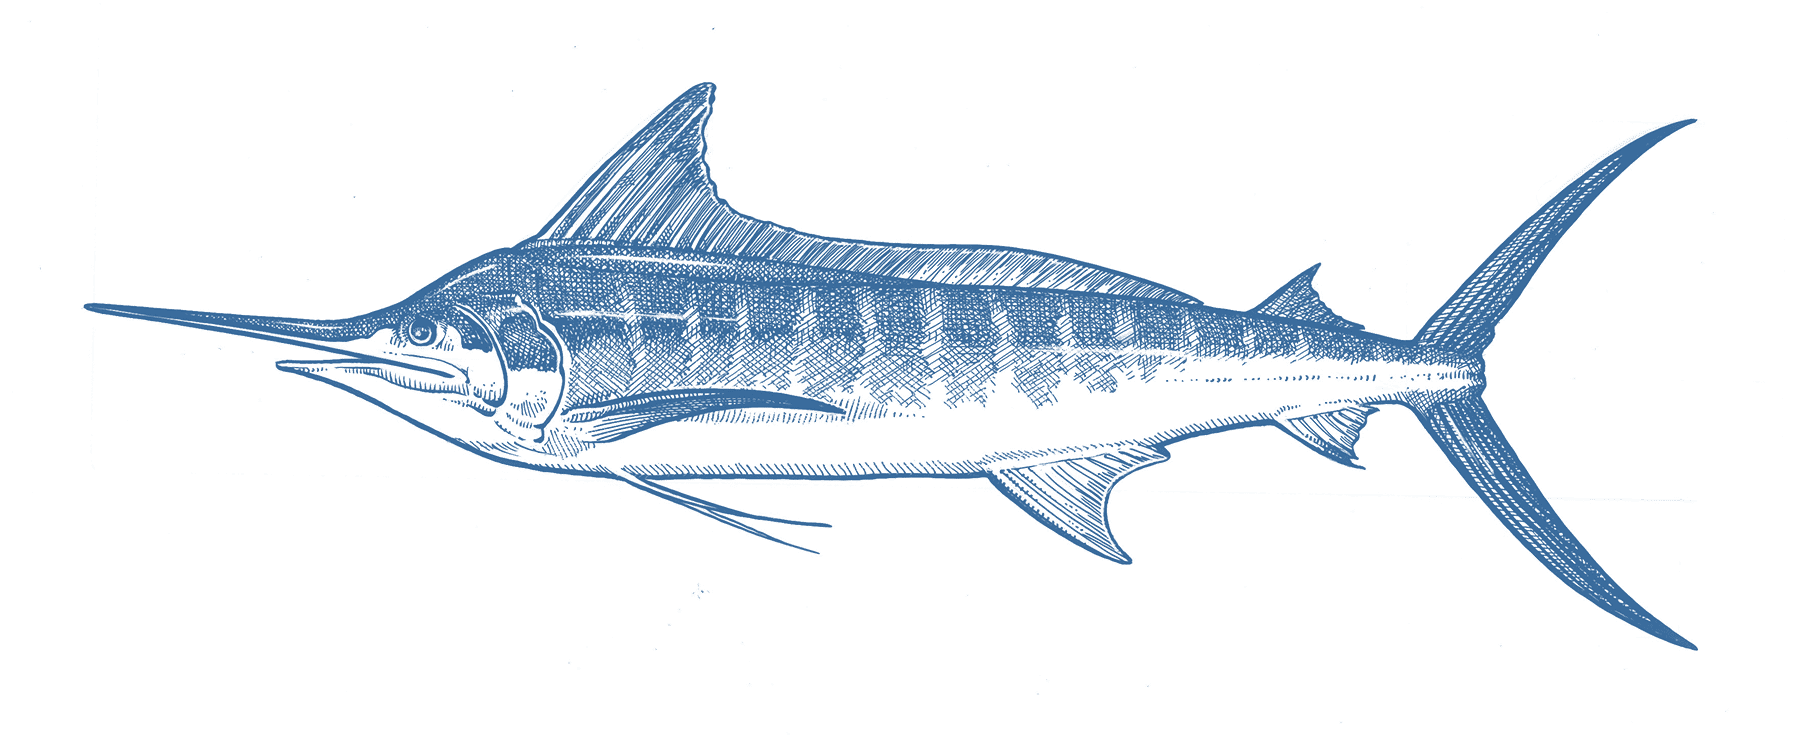 Marlin species in Cabo